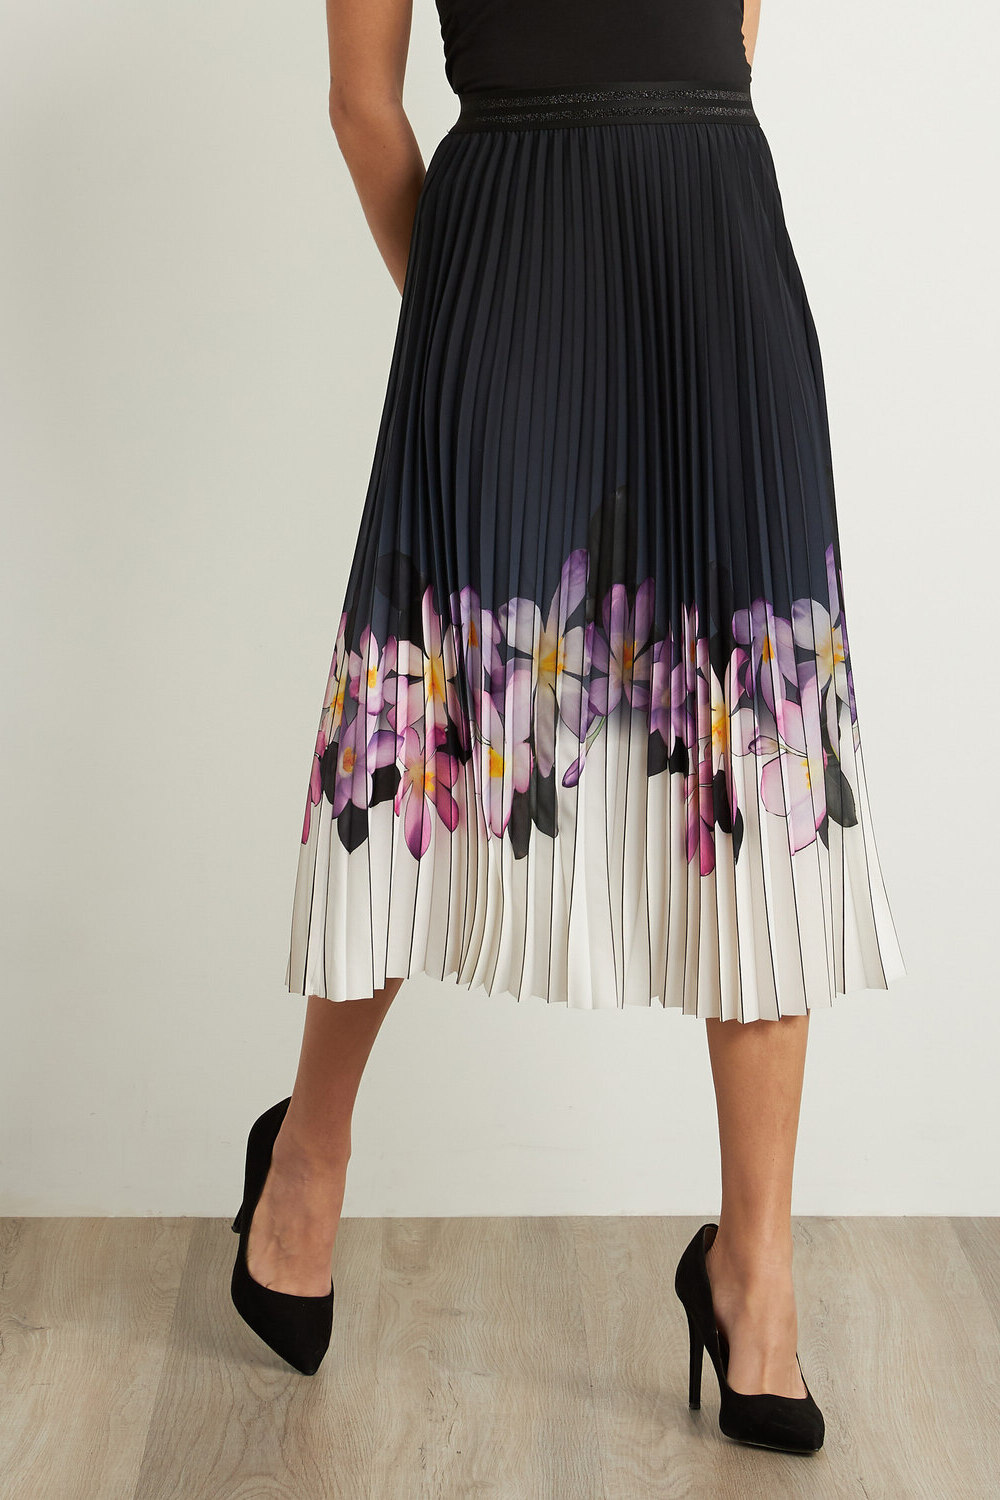 Joseph Ribkoff Pleated Floral Skirt Style 211956. Black/purple/multi